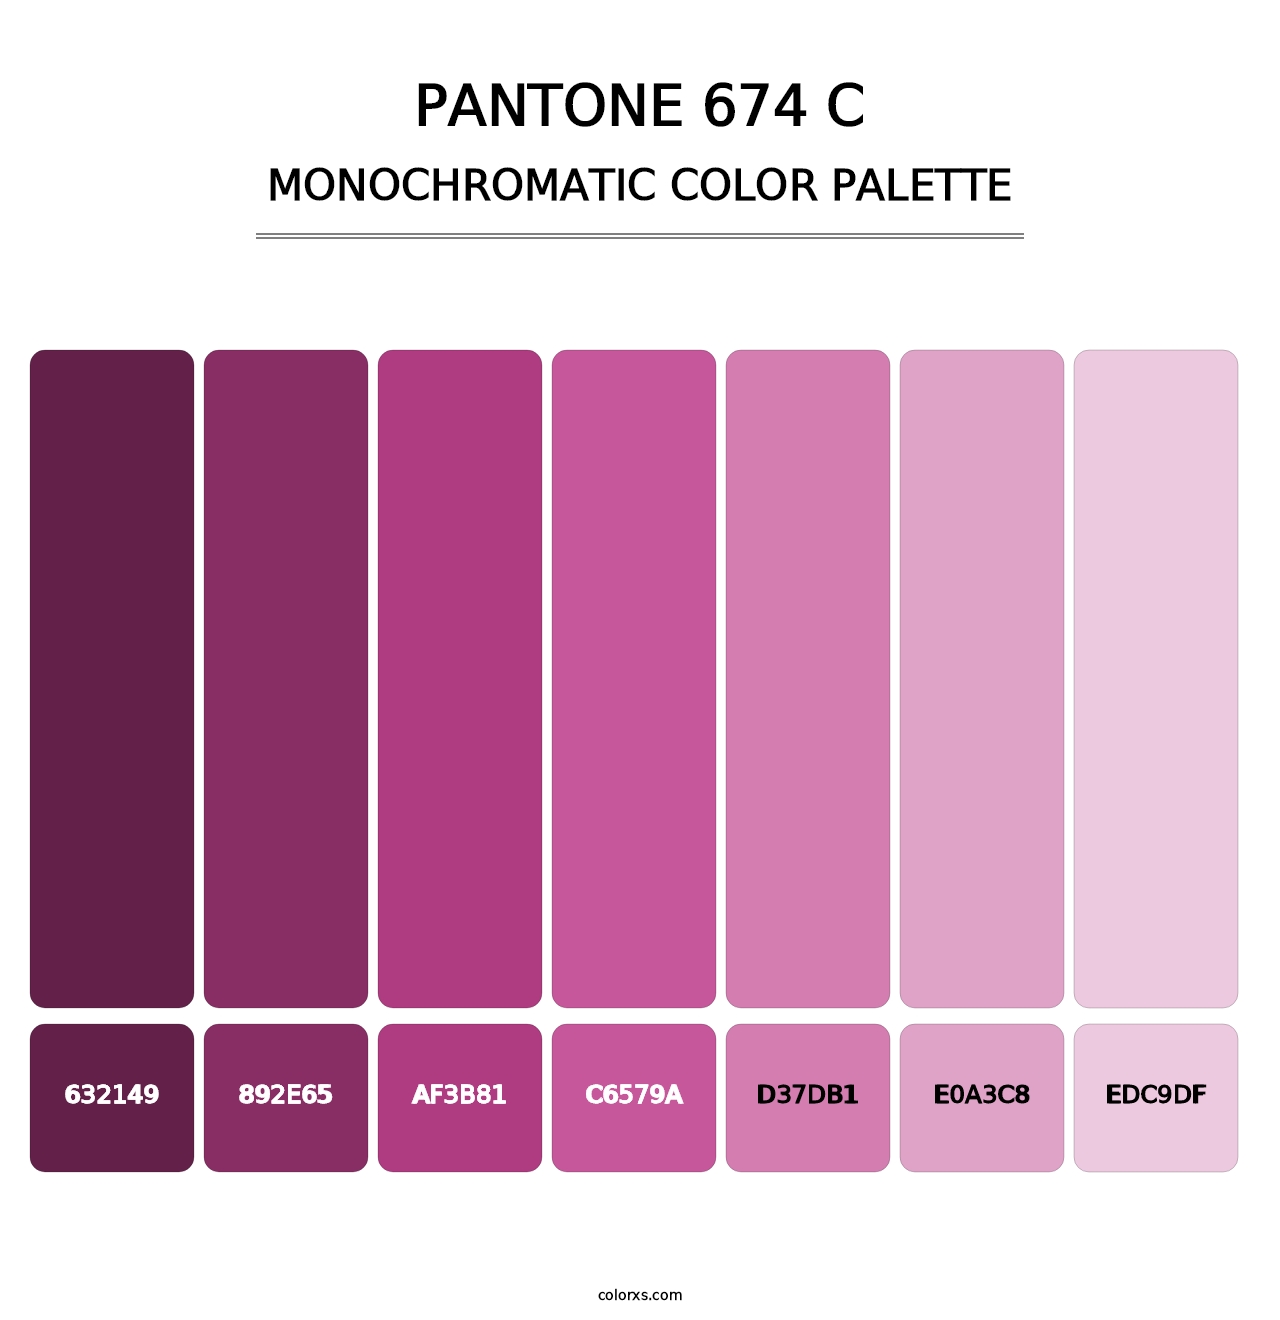 PANTONE 674 C - Monochromatic Color Palette